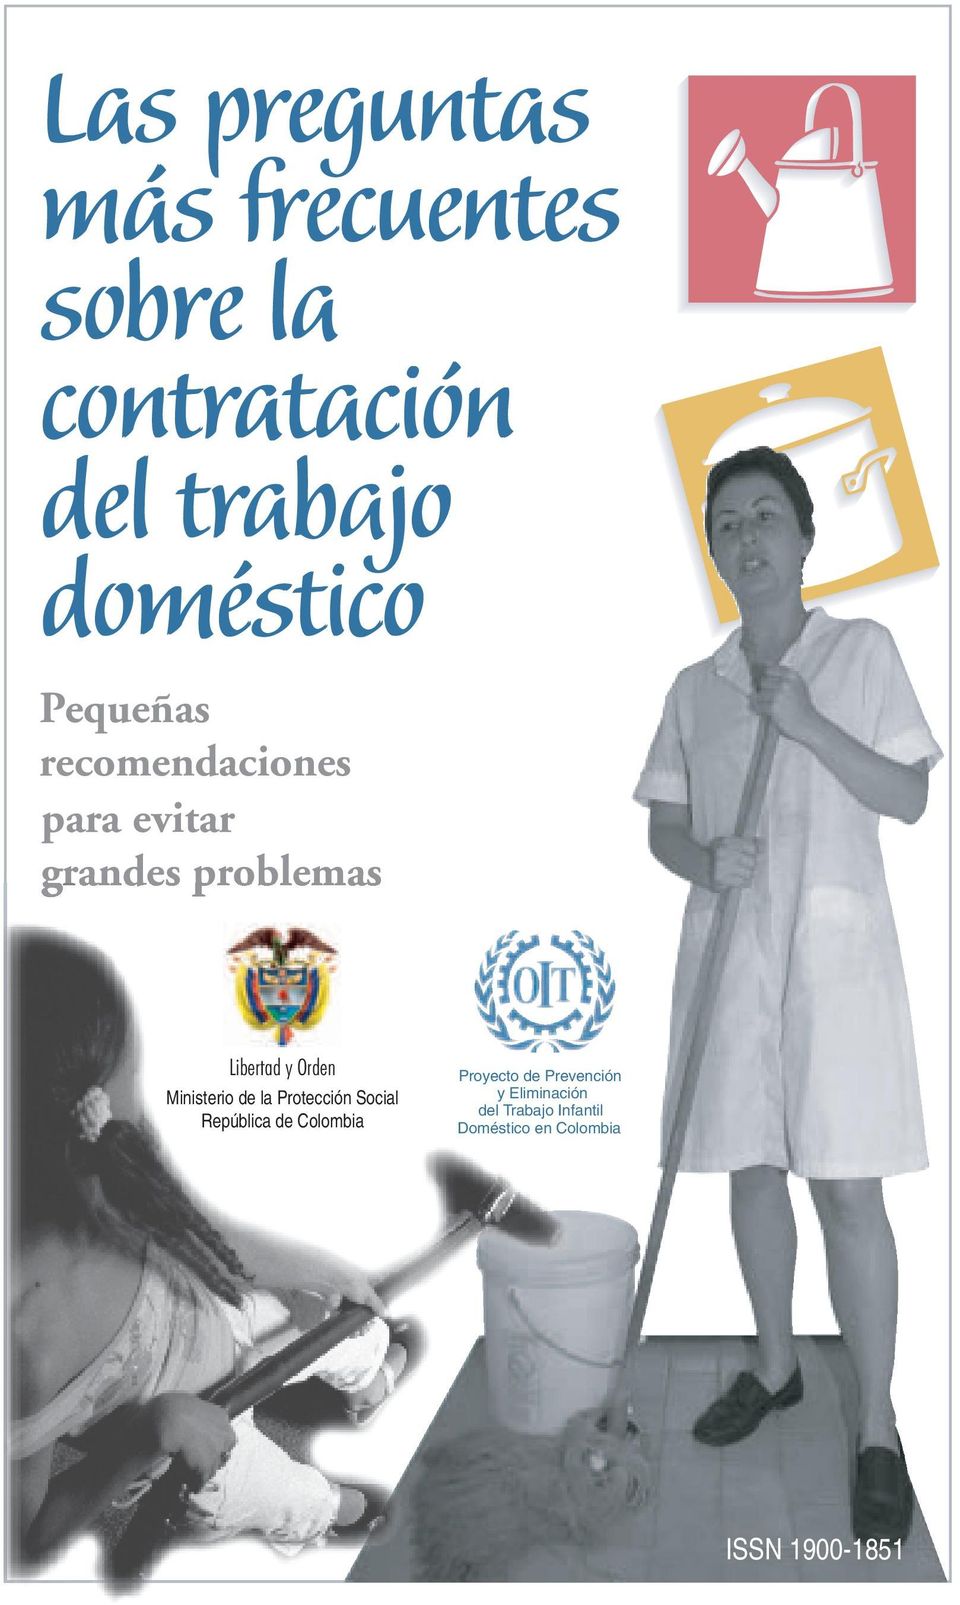 Ministerio de la Protección Social República de Colombia Proyecto de